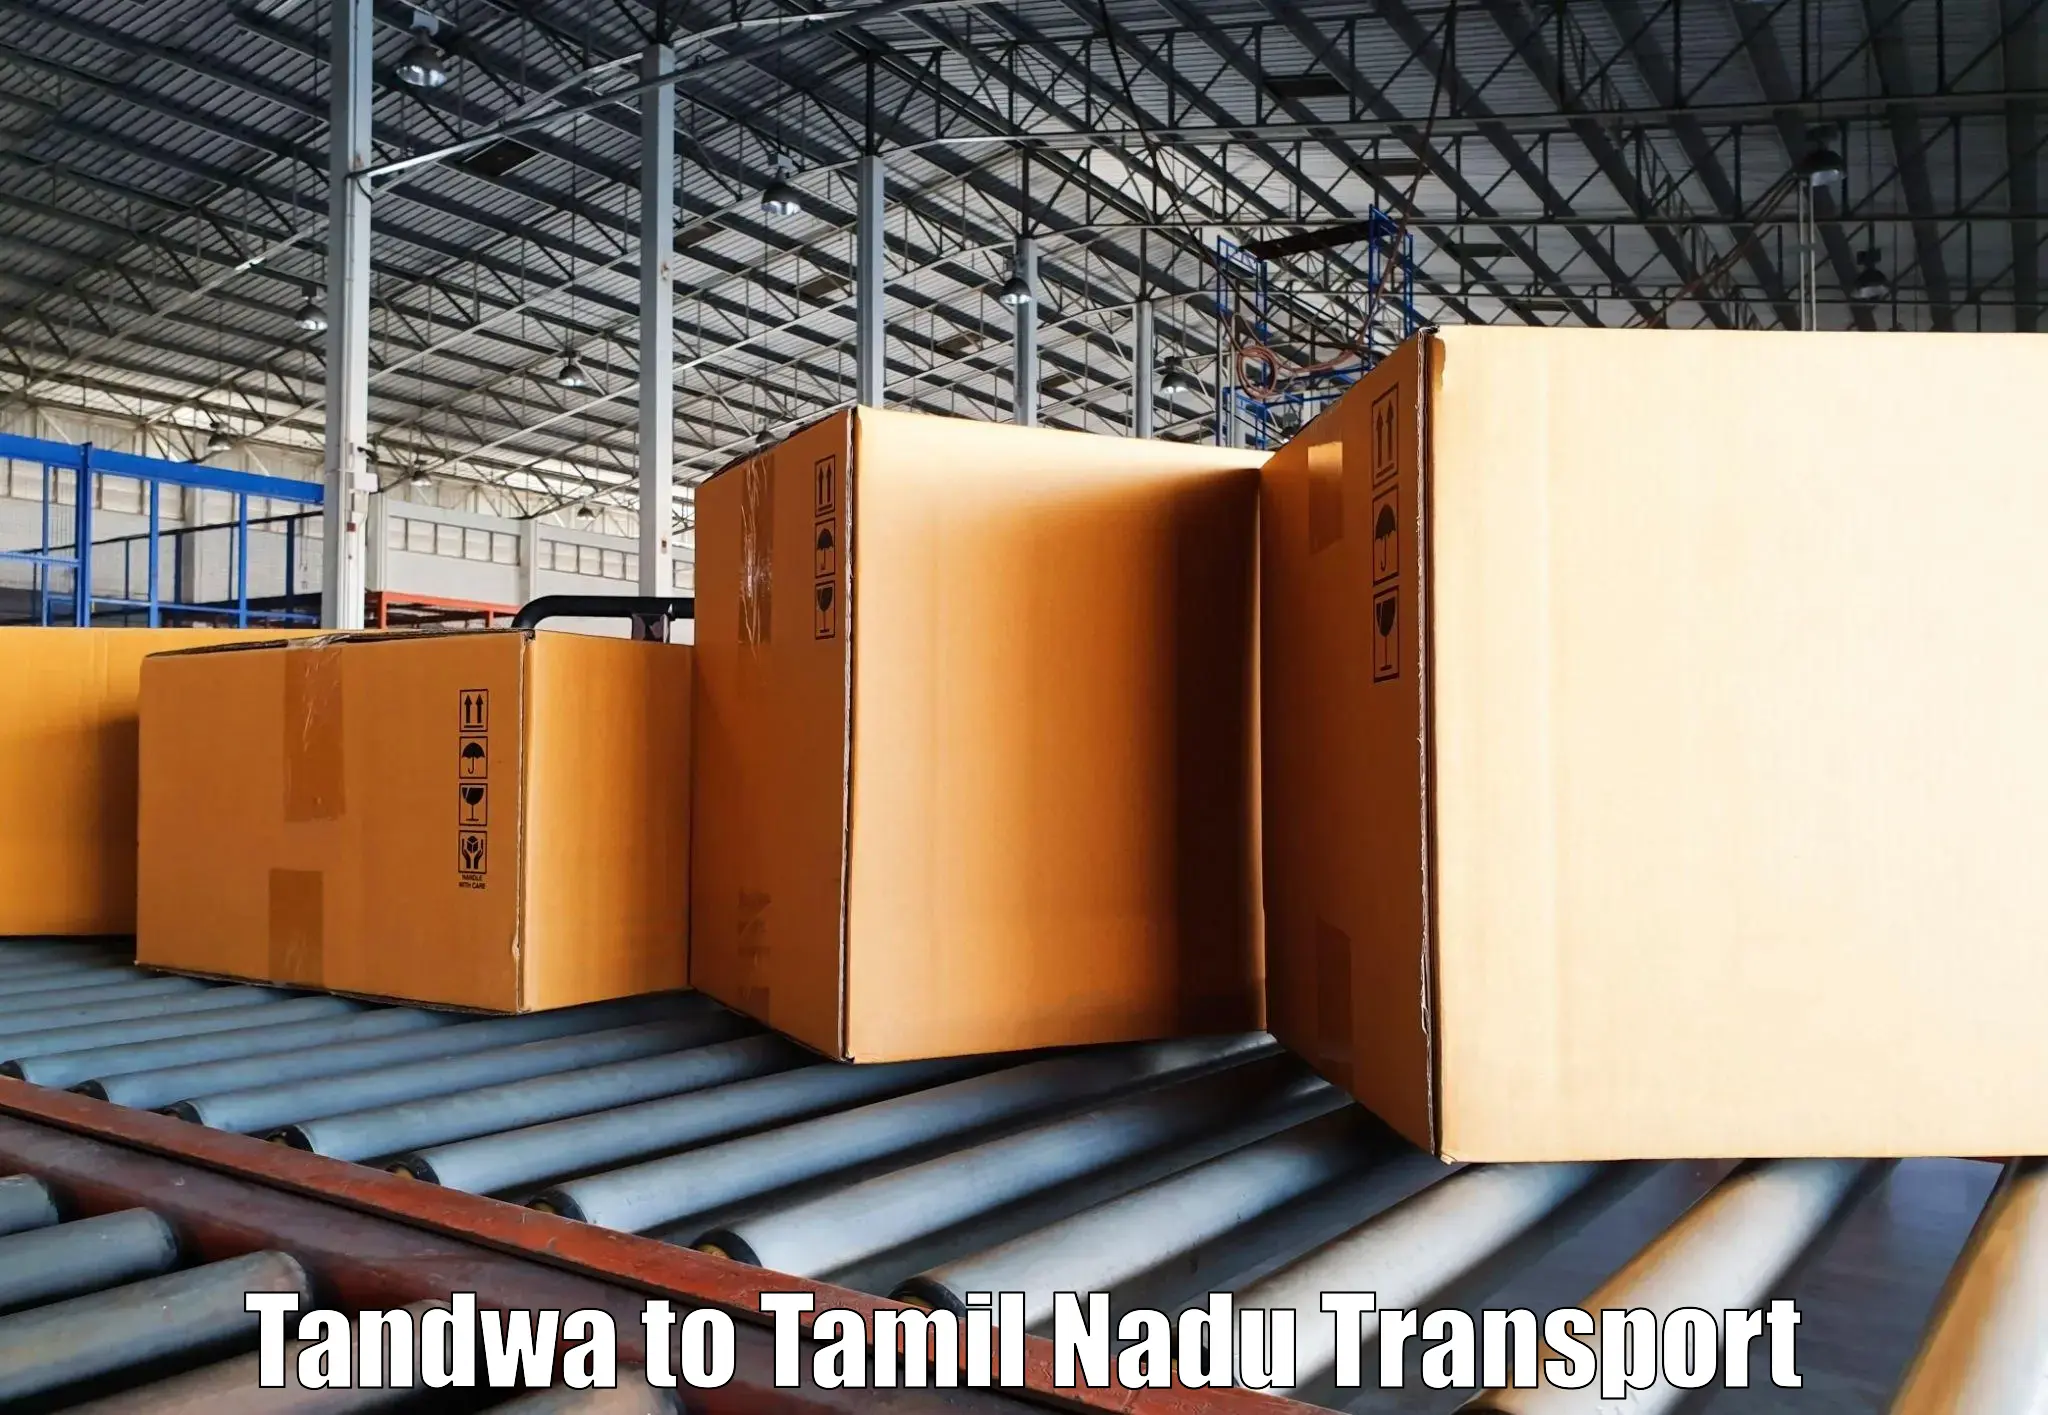 Bike shipping service Tandwa to Salem